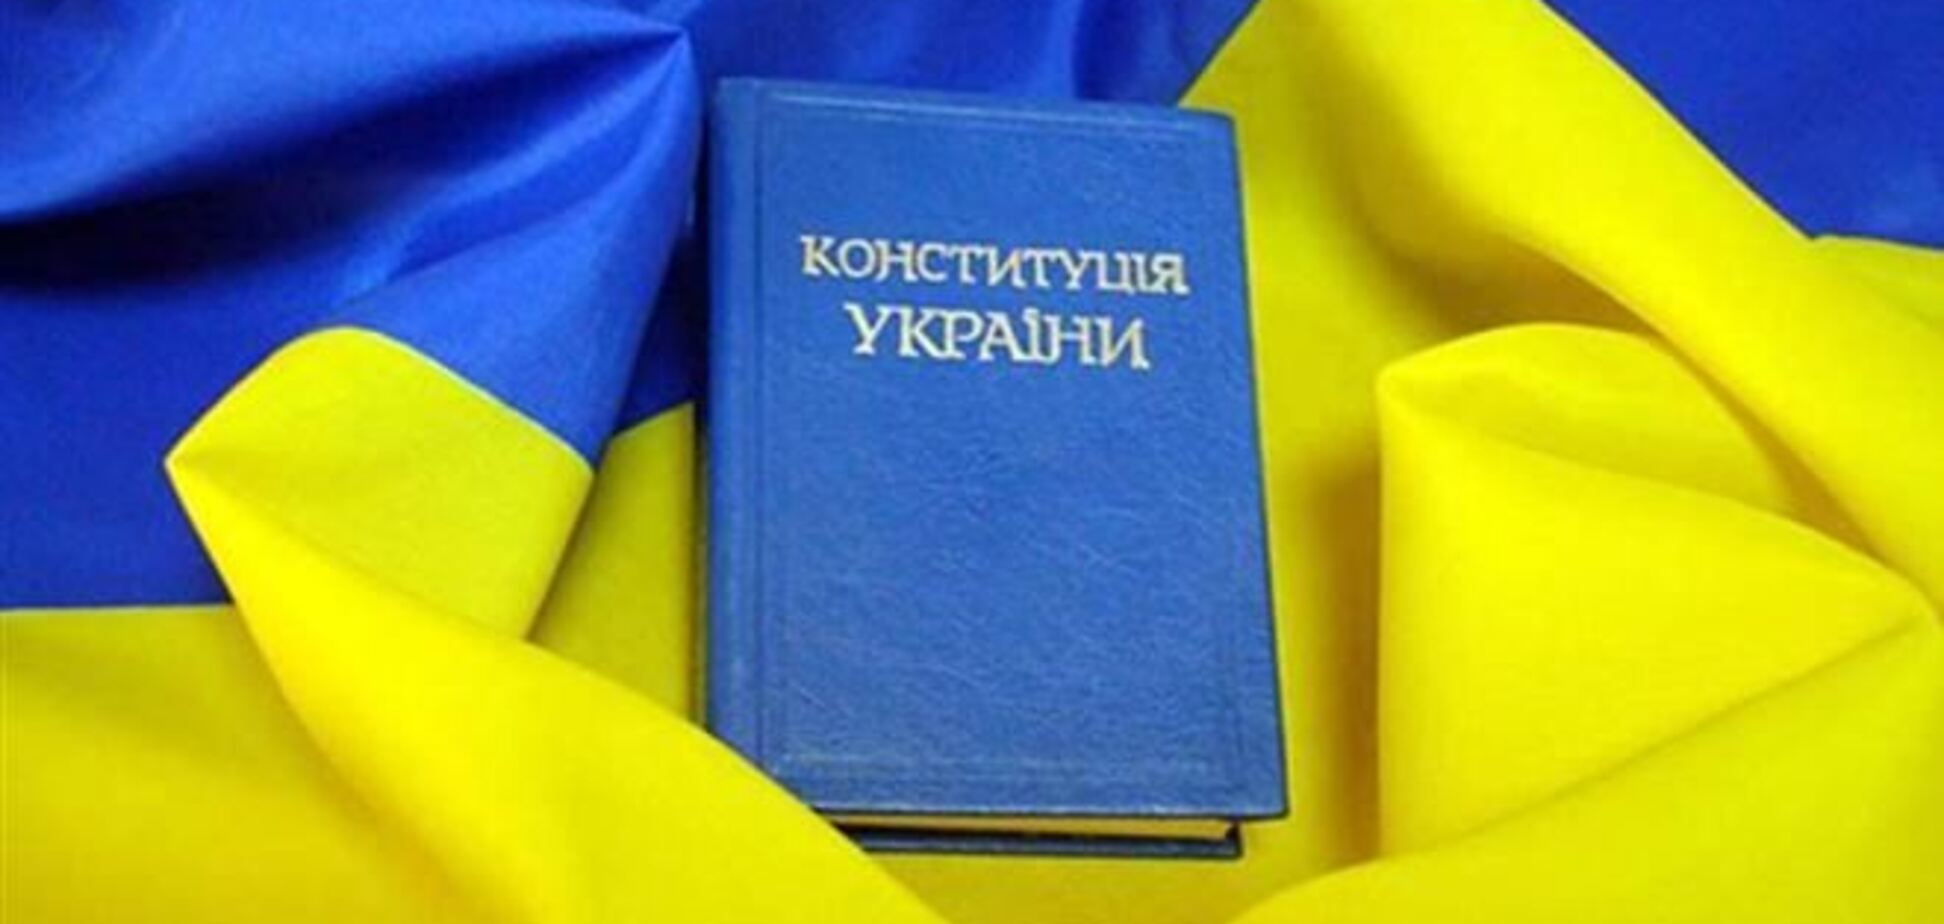 Оппозиция зарегистрировала в Раде законопроект о конституционной реформе